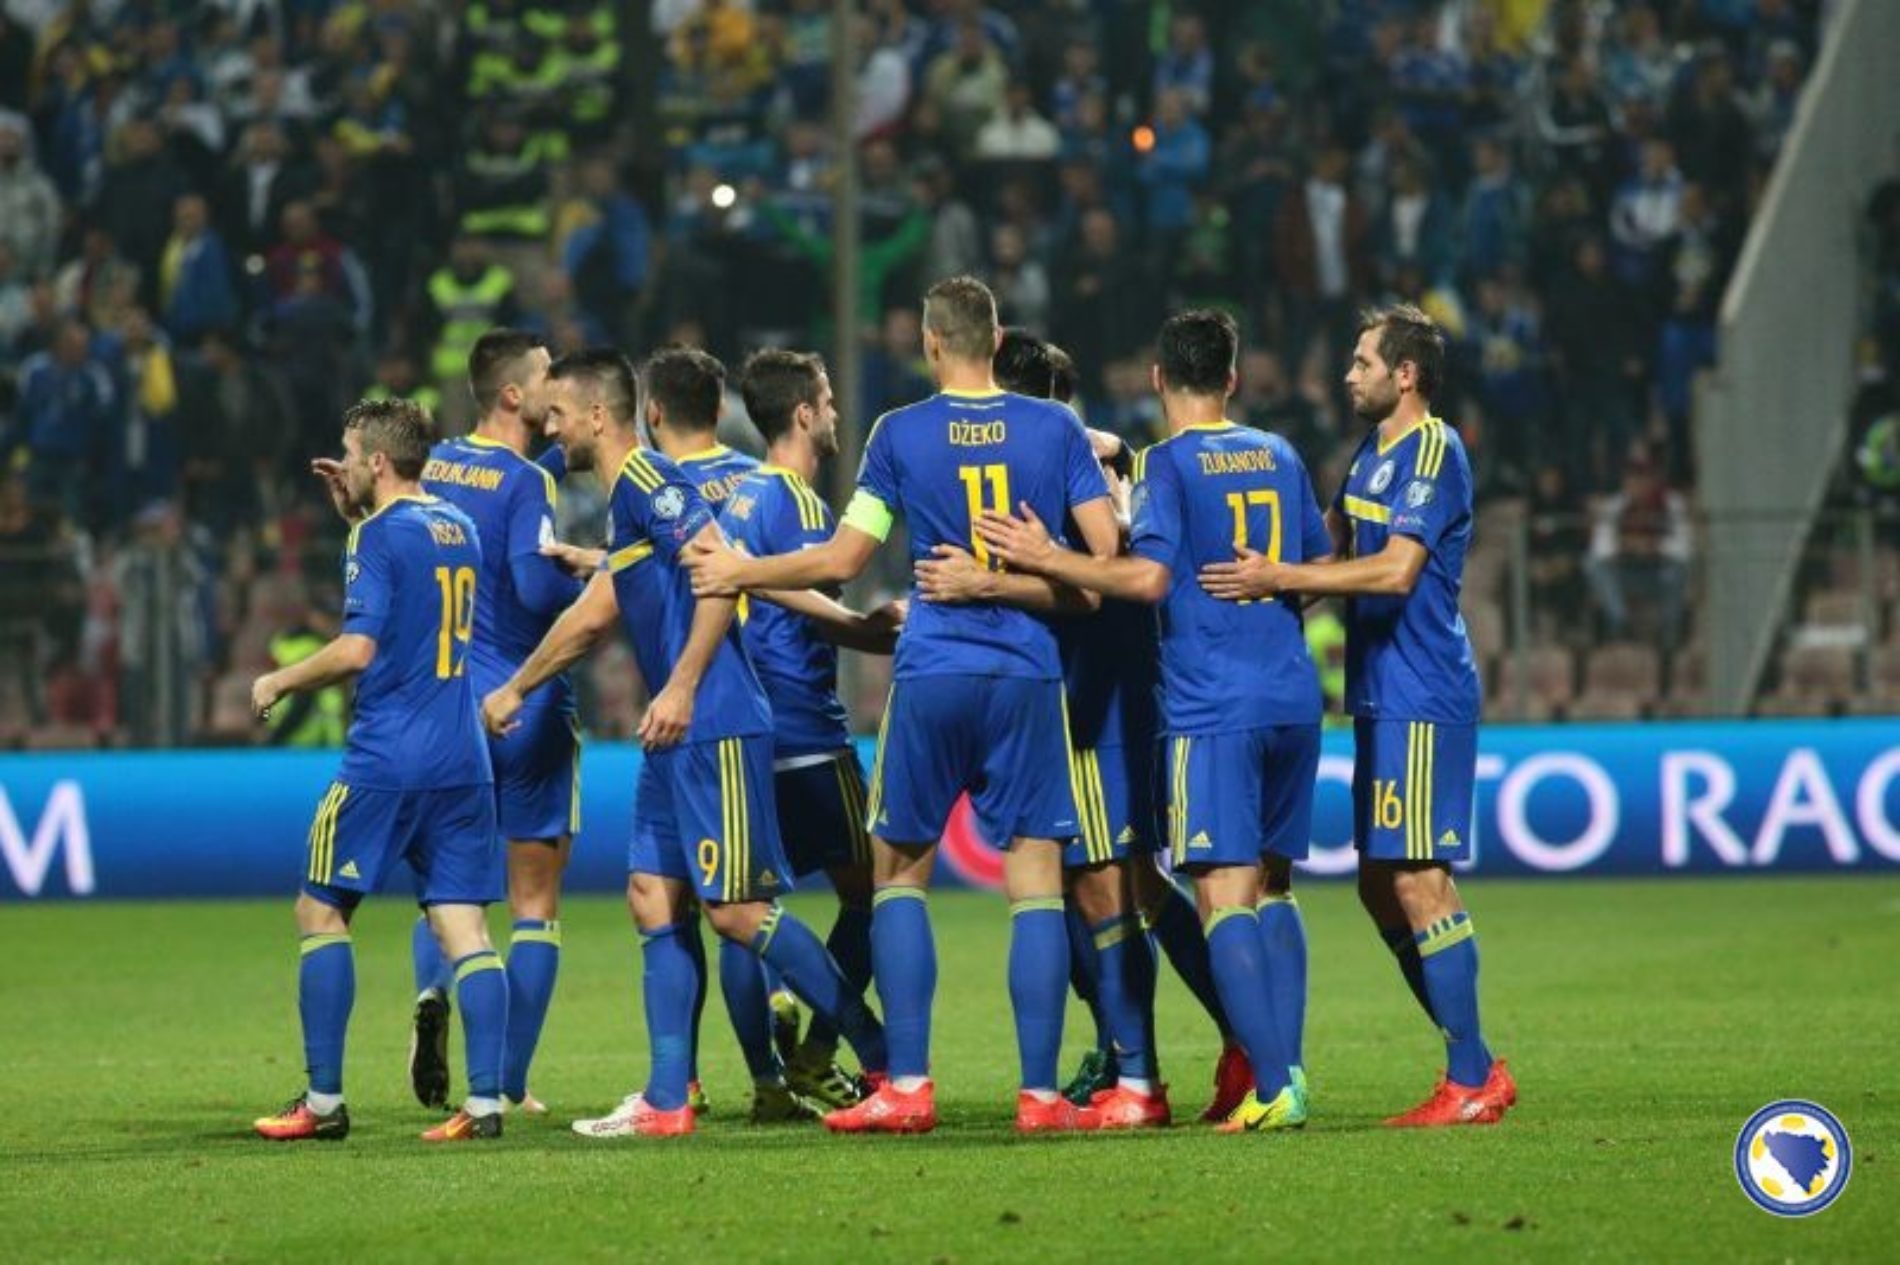 Zmajevi krenuli pobjednički u kvalifikacijama za Mundijal: Pobjeda nad Estonijom – 5:0